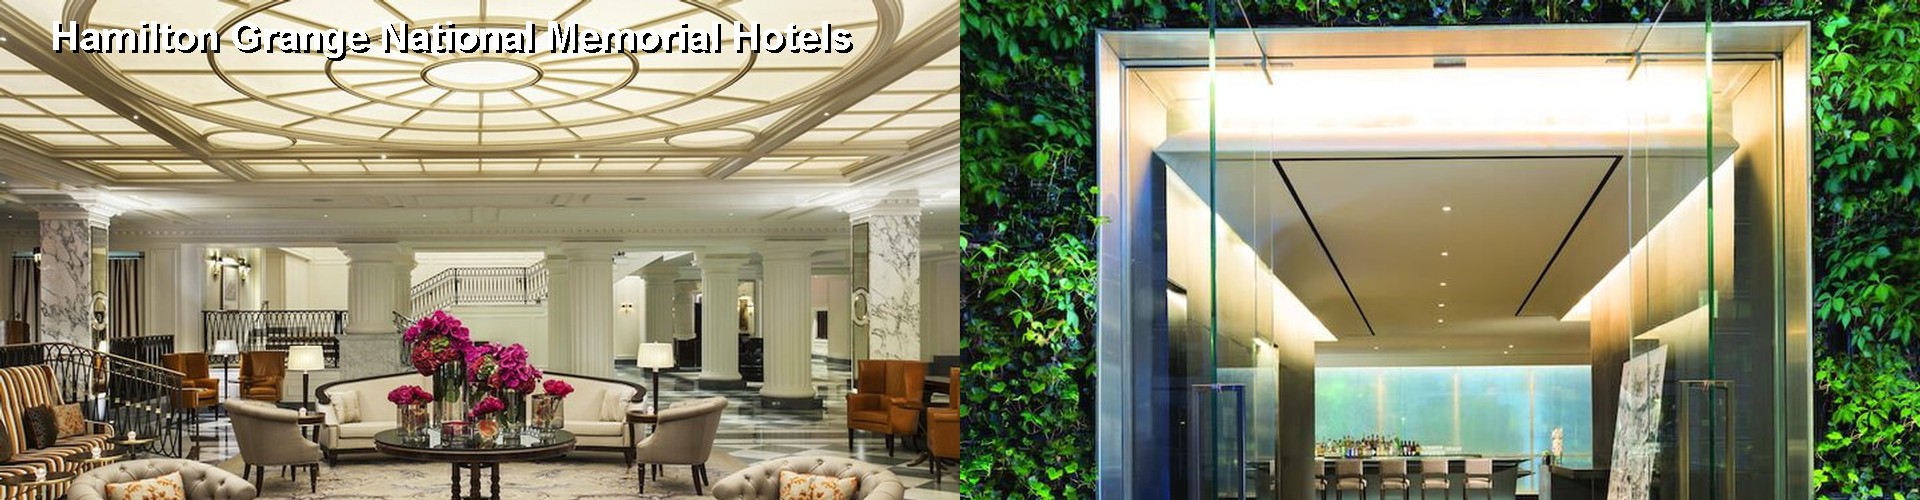 3 Best Hotels near Hamilton Grange National Memorial